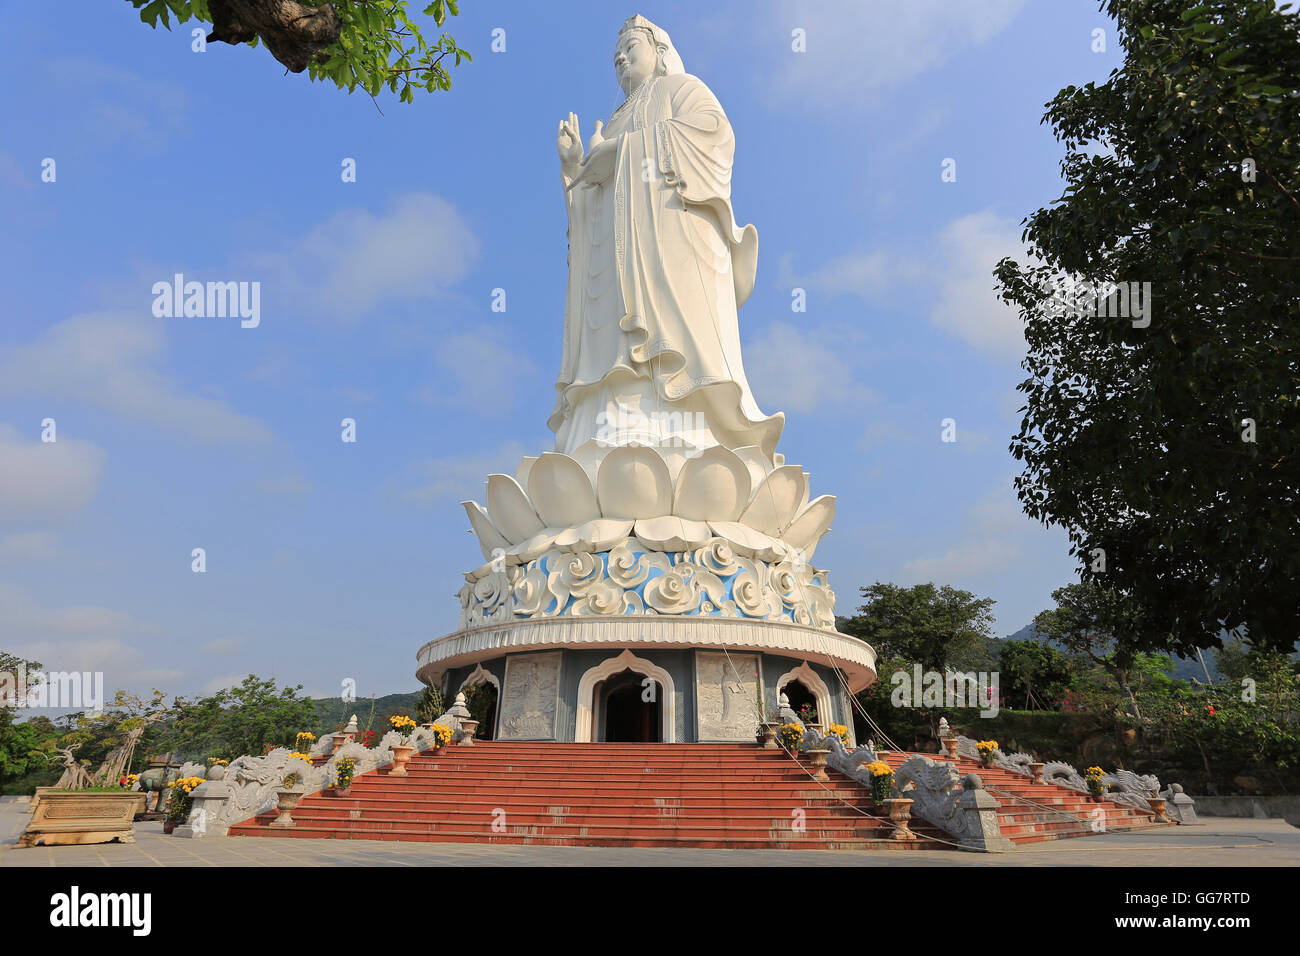 La Statue de Bouddha dans la pagode Linh Ung, Da nang, Vietnam Banque D'Images